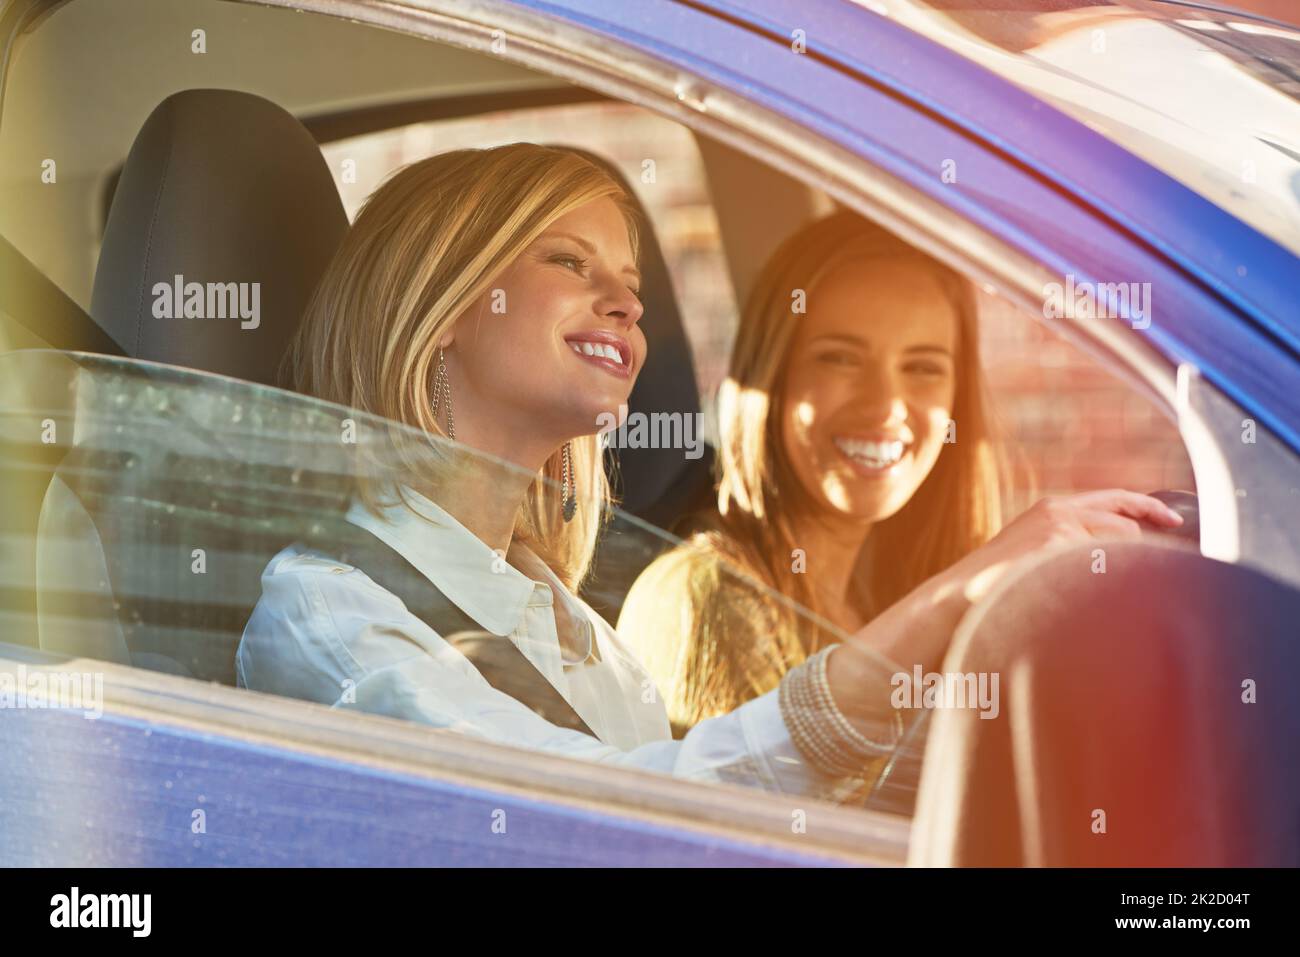 Auf dem Weg zum Einkaufszentrum. Aufnahme von zwei jungen Frauen, die in einem Auto in der Stadt unterwegs sind. Stockfoto